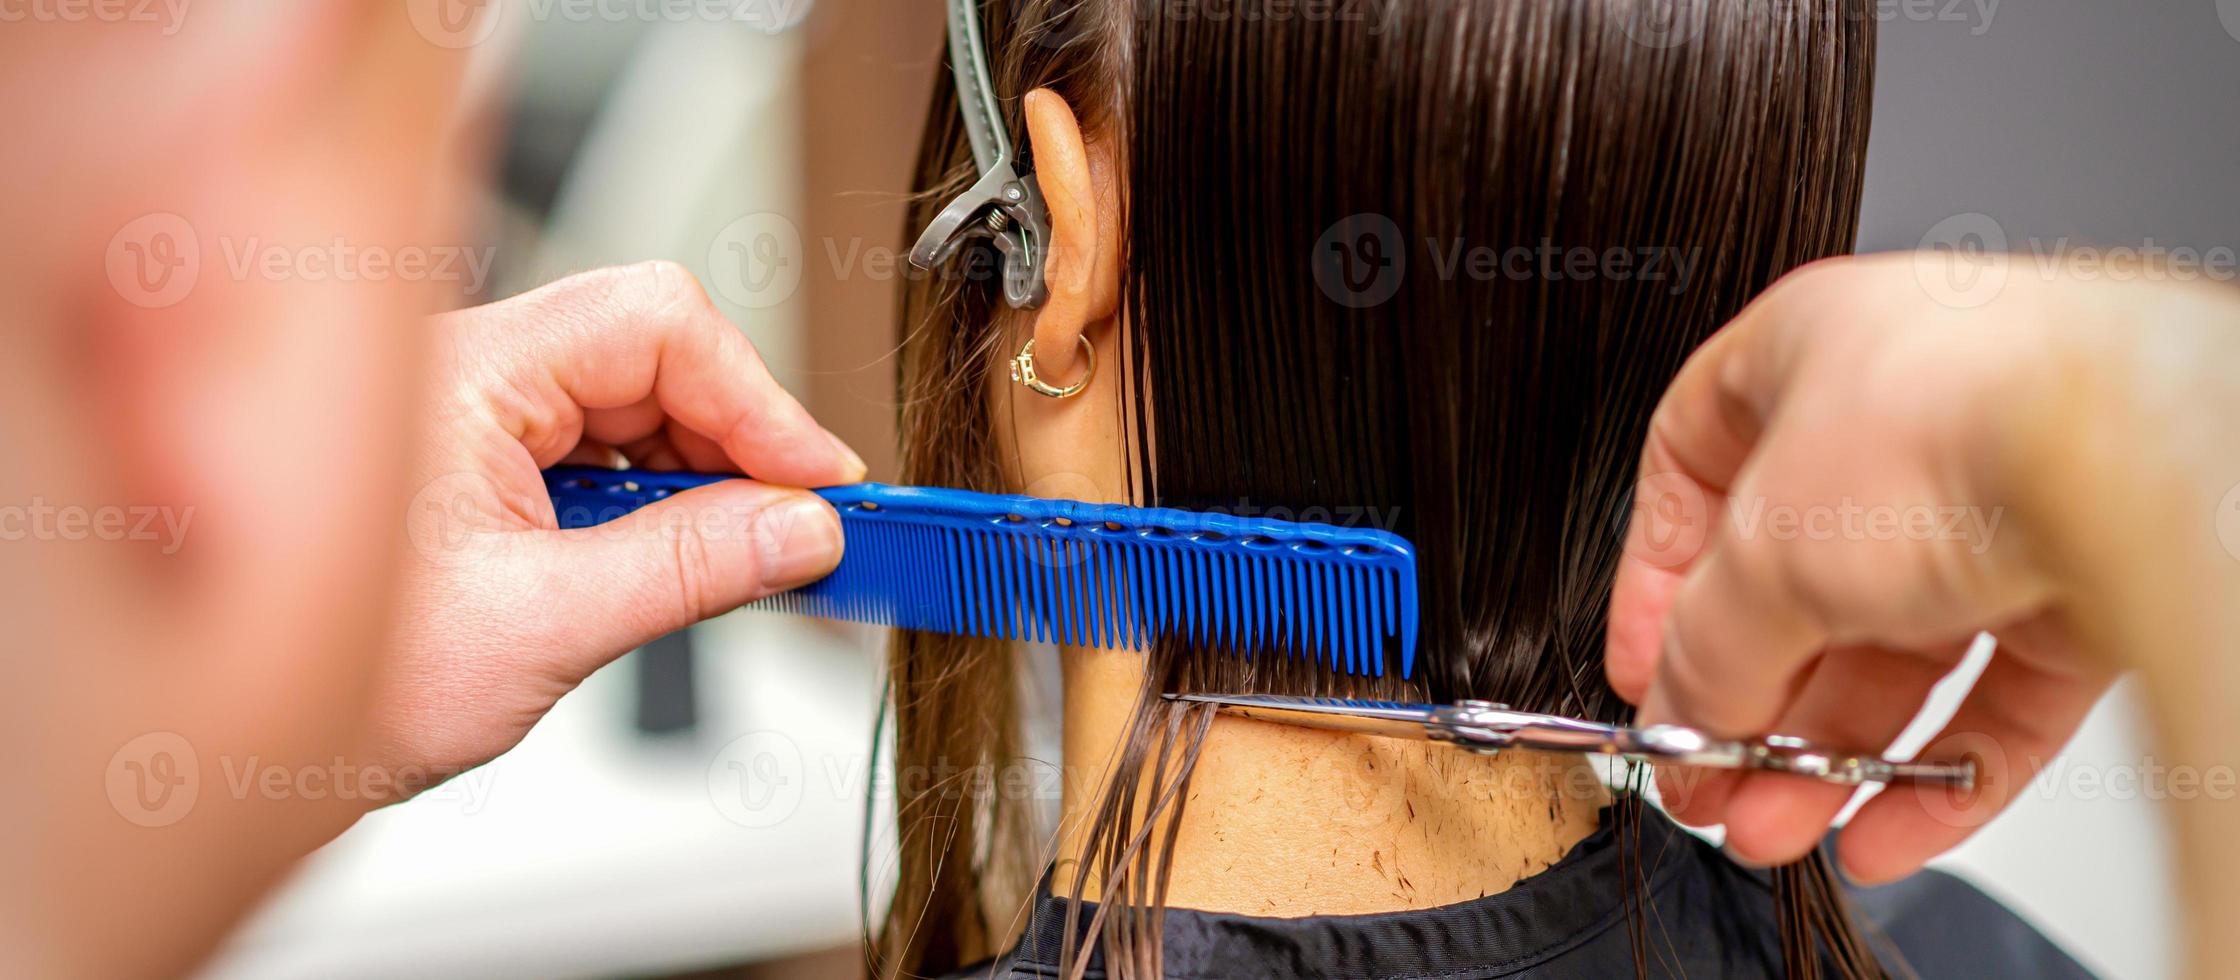 parrucchiere tagli capelli di donna foto